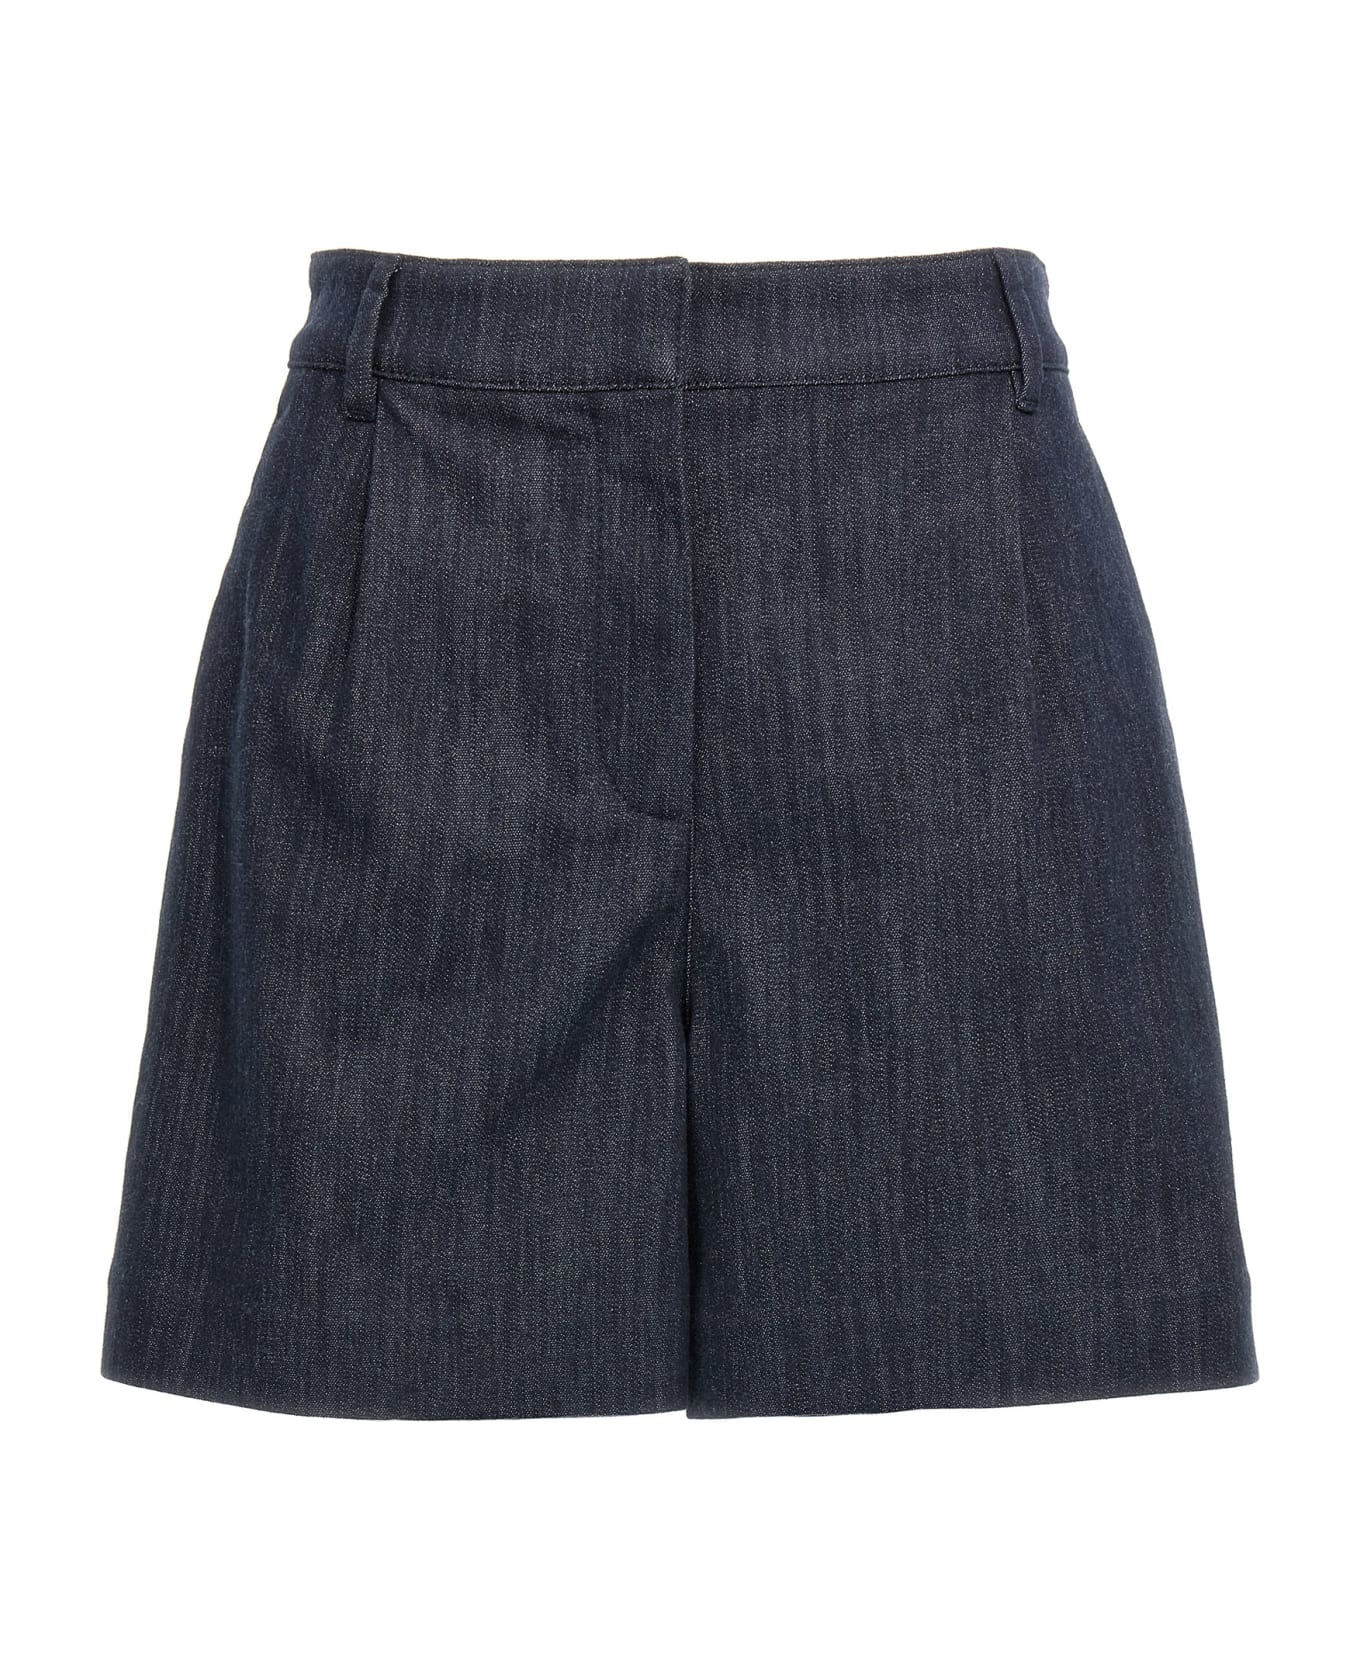 Brunello Cucinelli 'sparkling' Shorts - Blue ショートパンツ